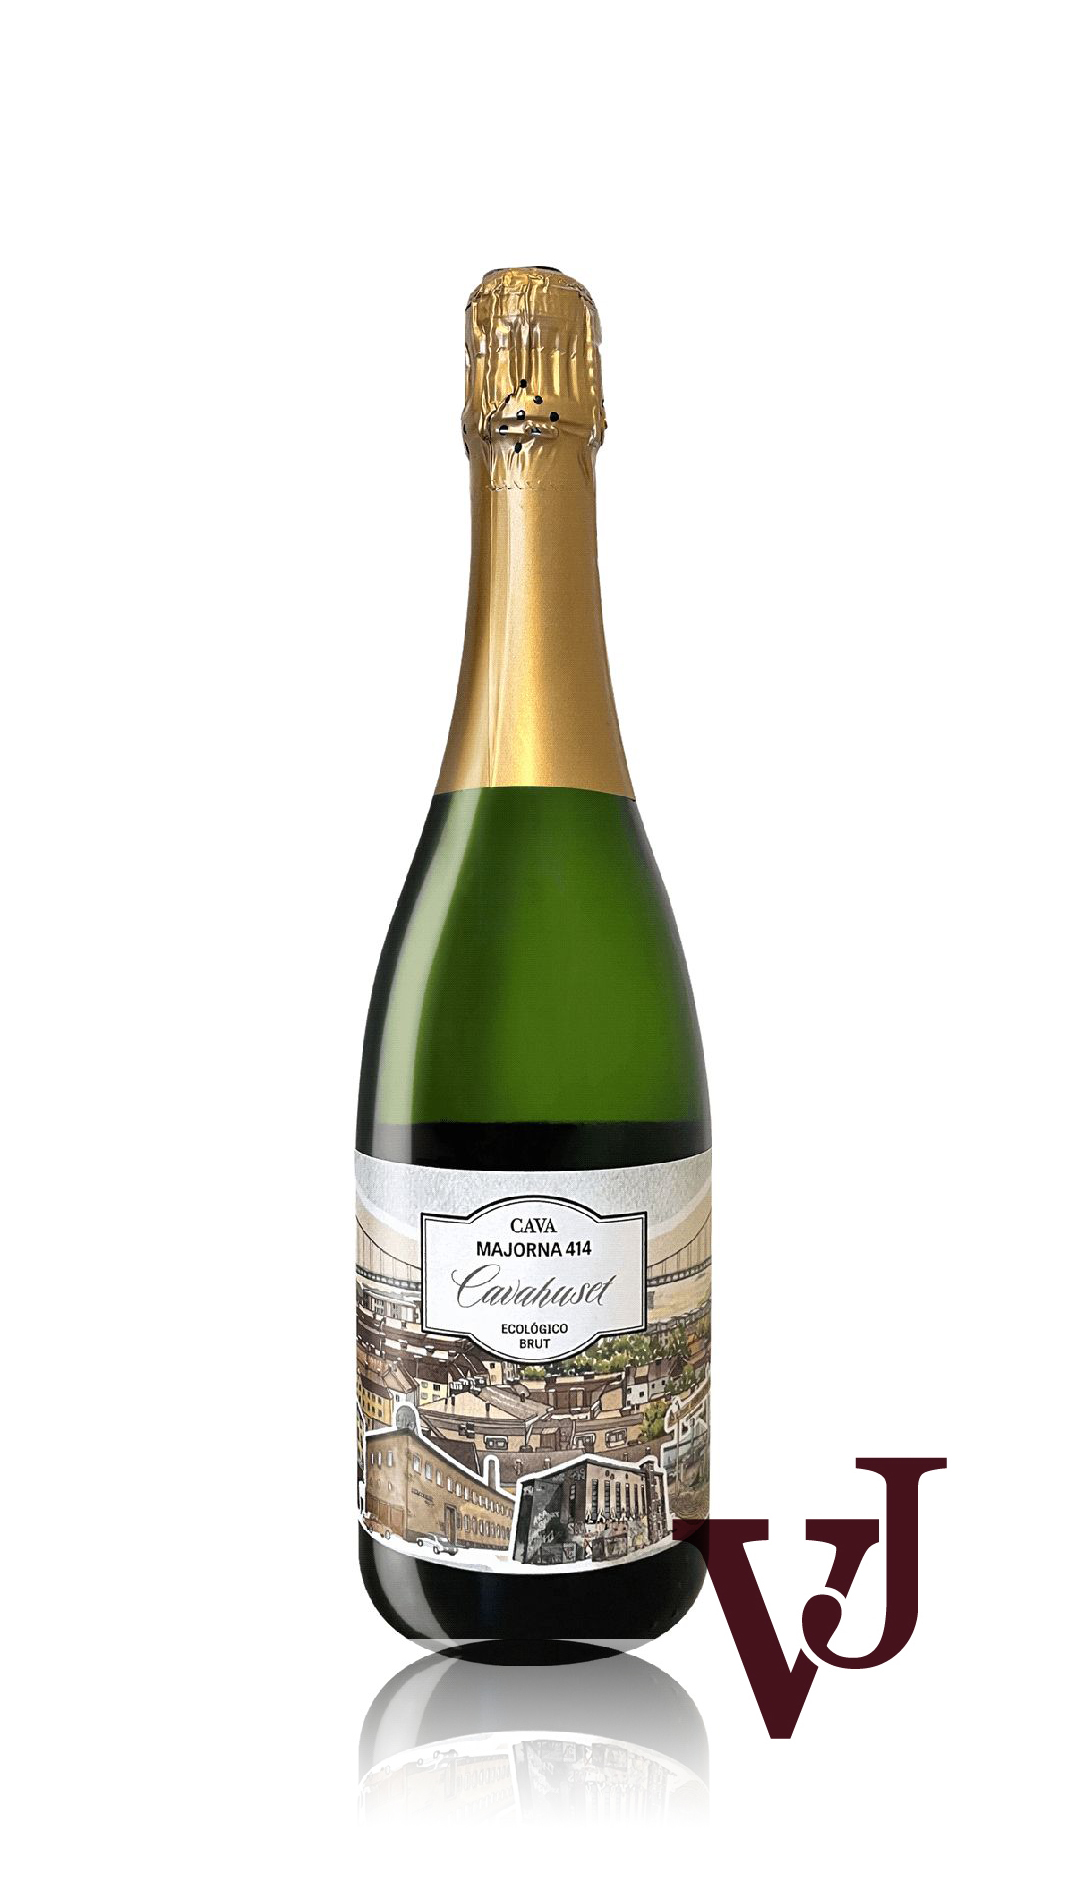 Mousserande Vin - Majorna 414 Cava 2022 artikel nummer 7388401 från producenten Pago de Tharsys från området Spanien